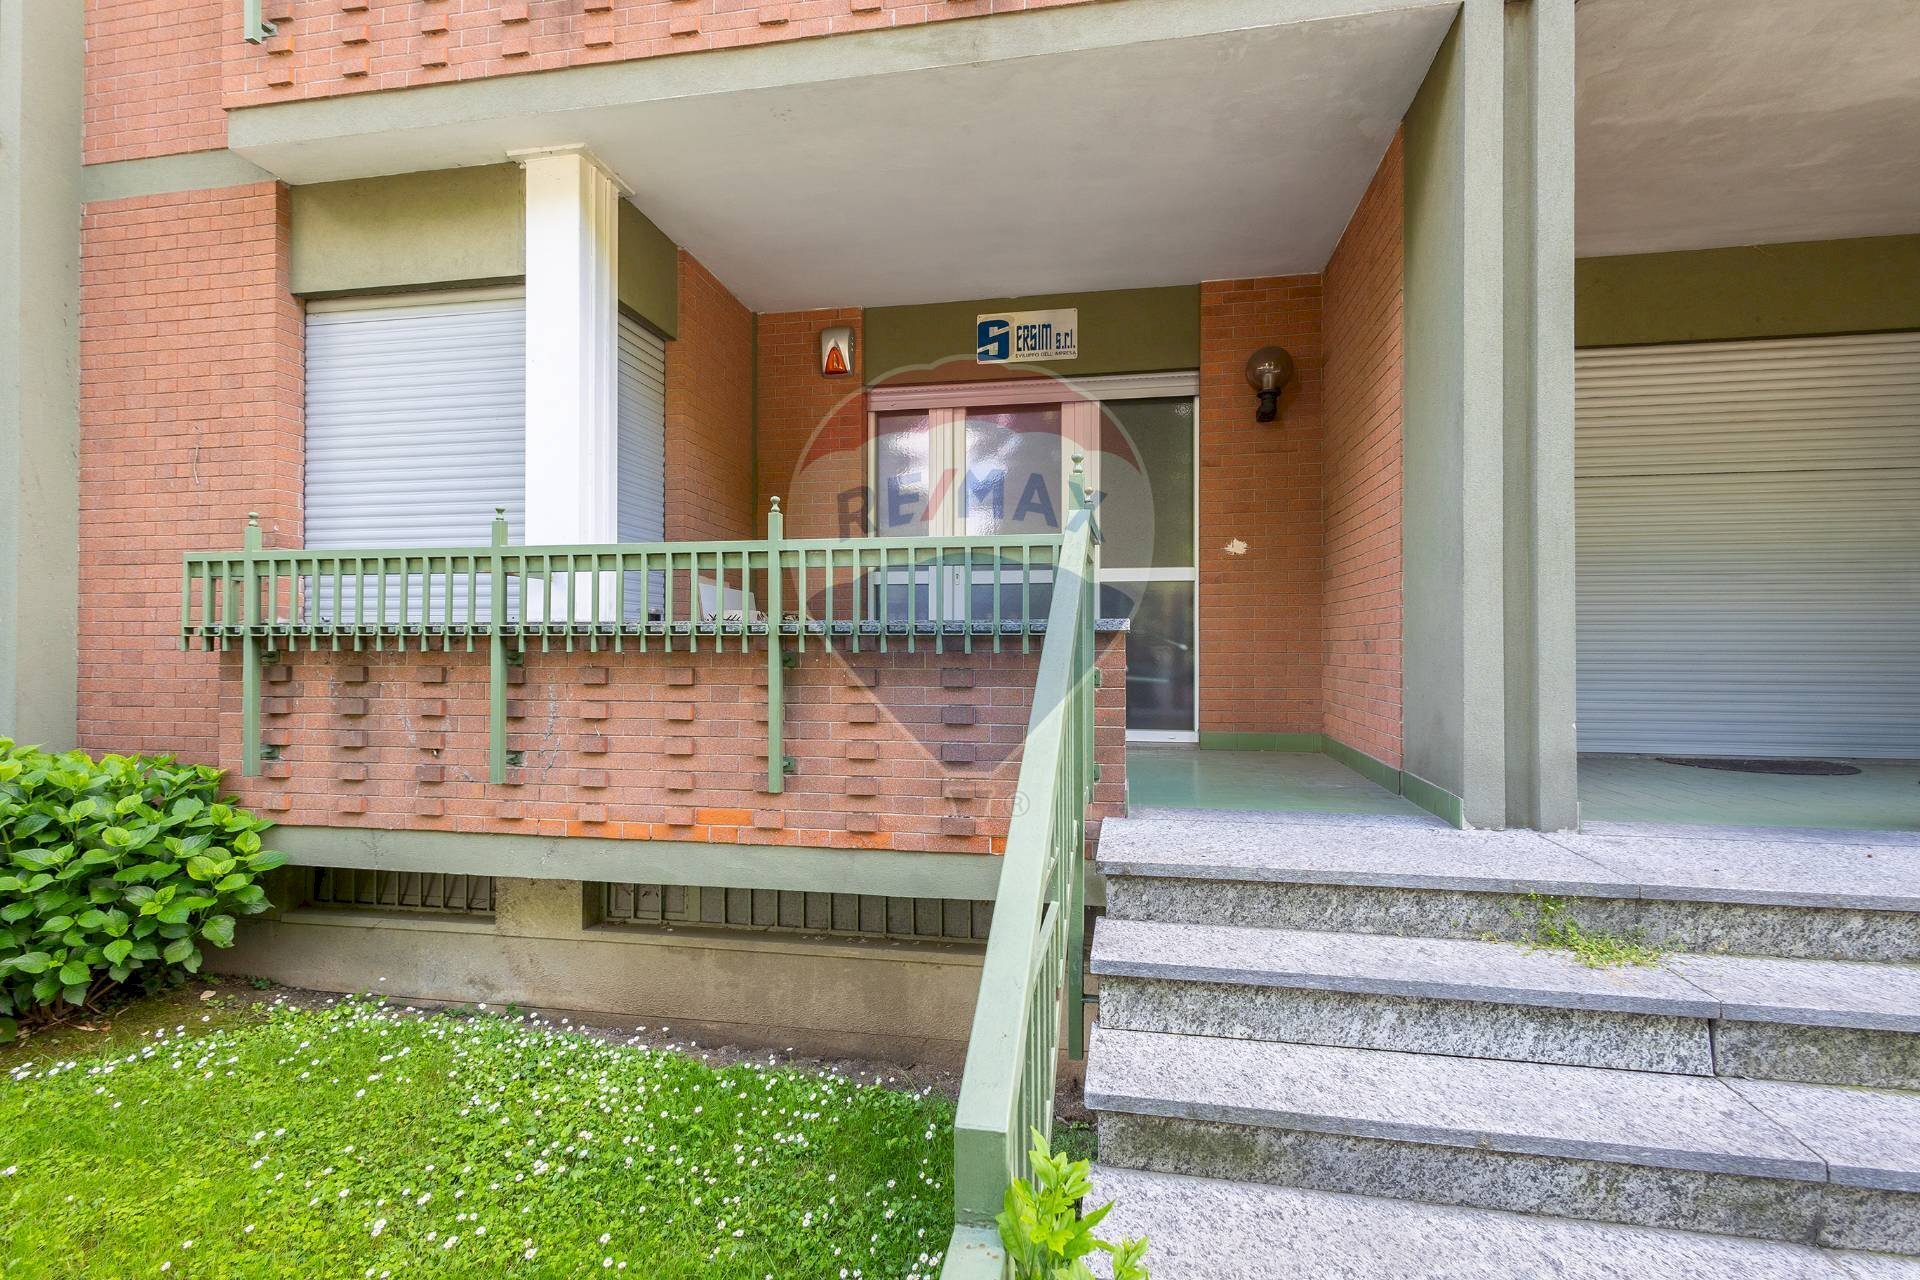 Vendita Appartamento Via Onorato Vigliani, 202
Lingotto, Torino